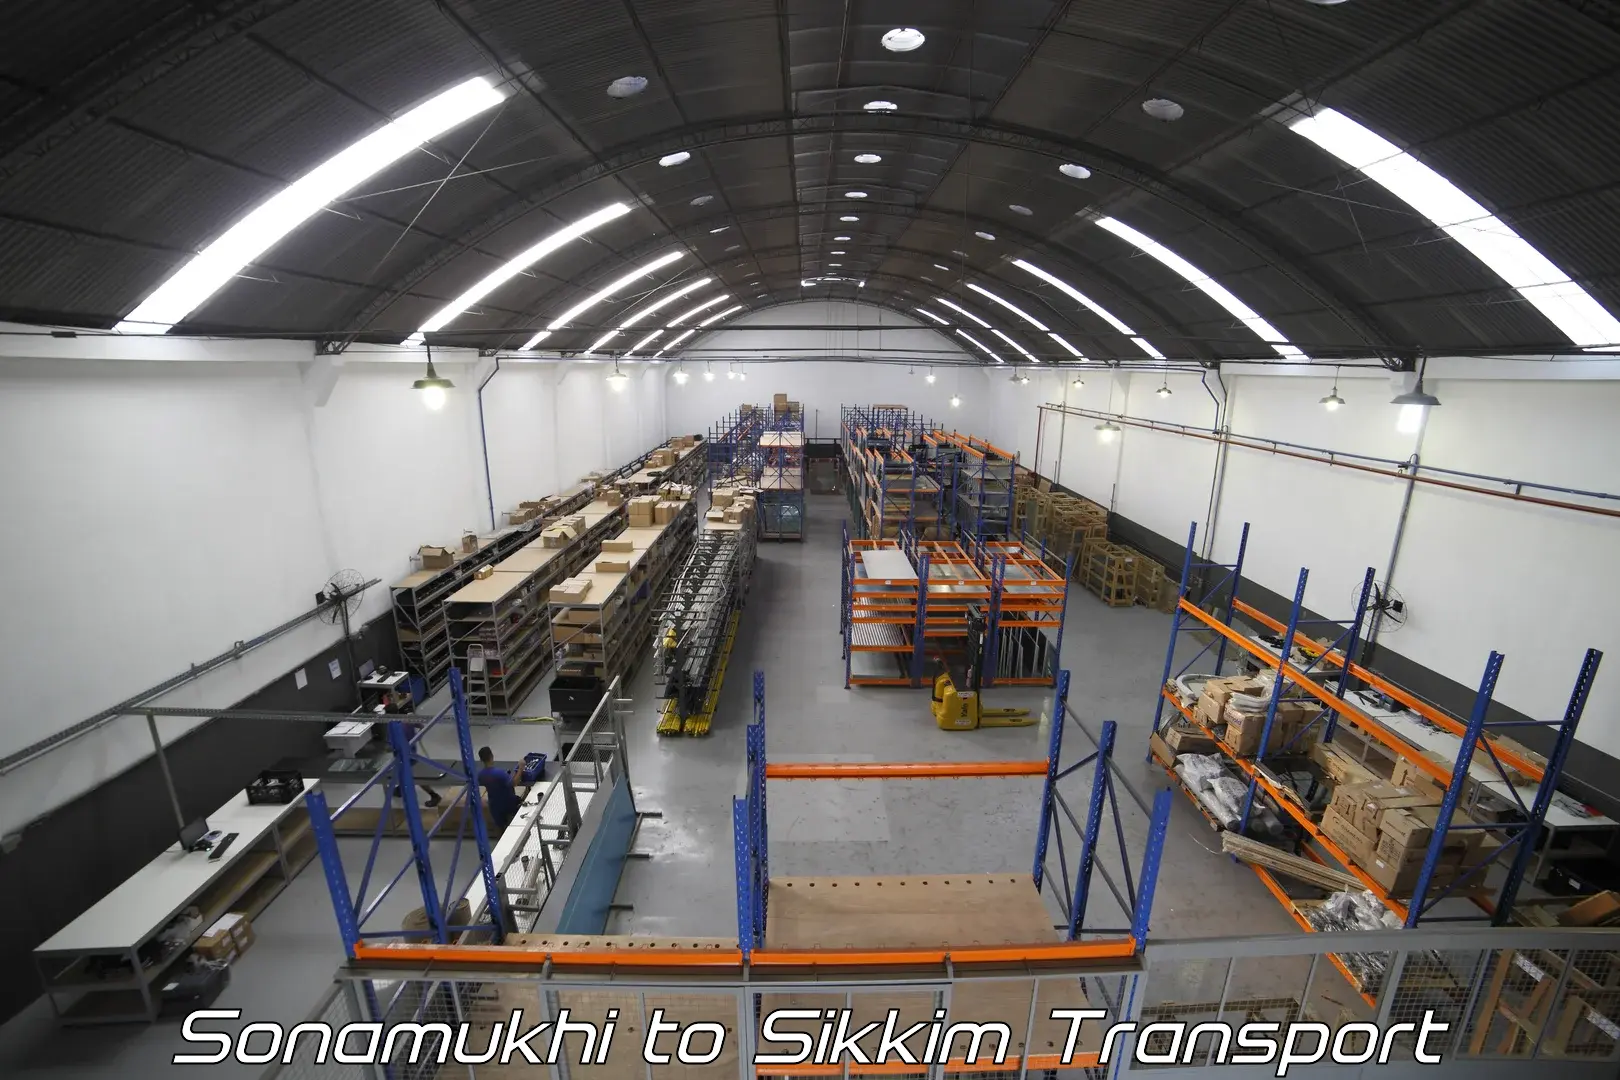 Container transport service Sonamukhi to Singtam